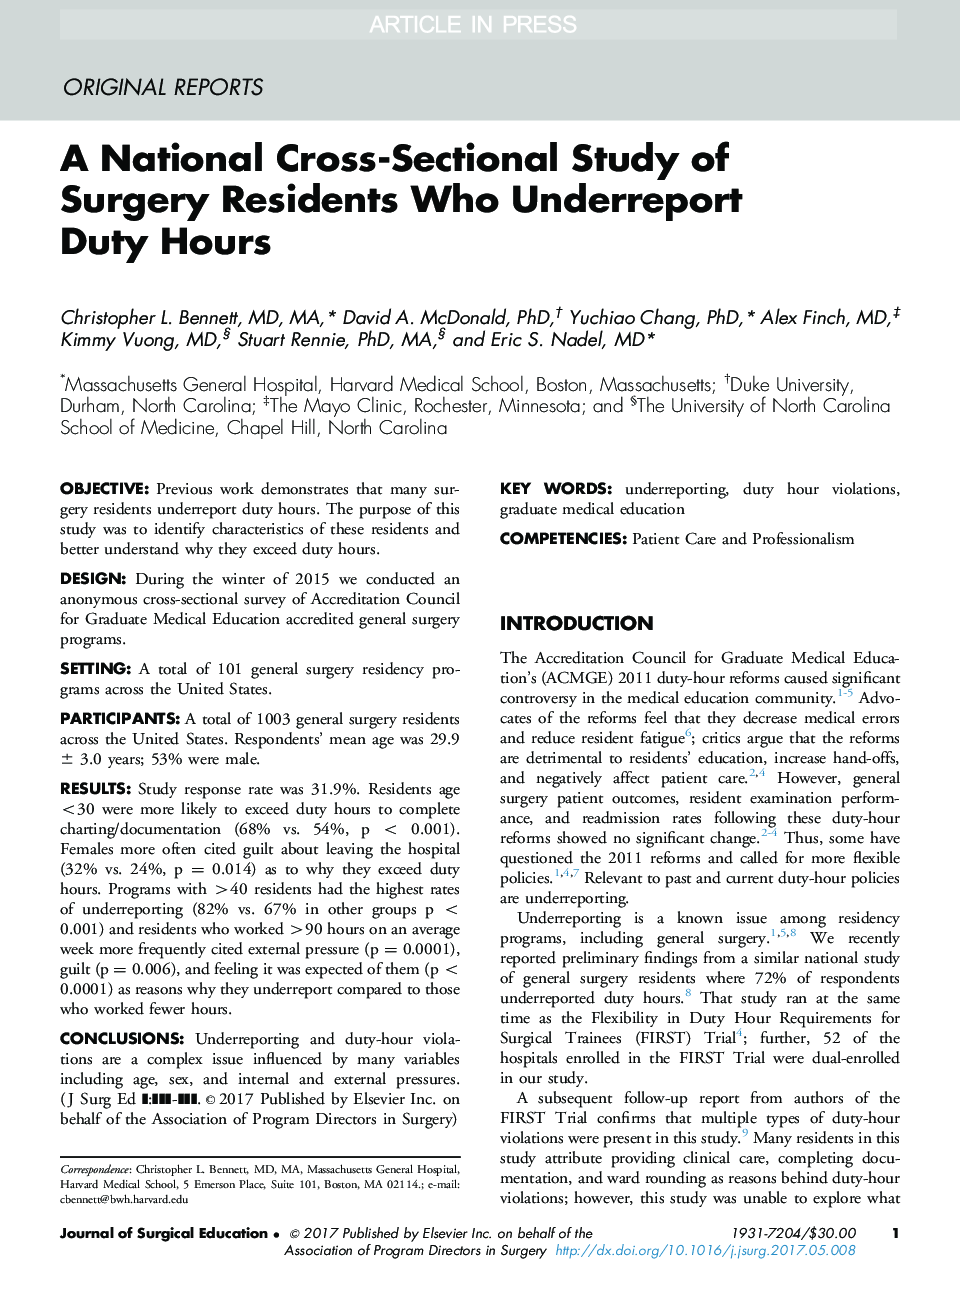 یک مطالعه بین بخش های ملی در مورد جراحان ساکنان که گزارشات کمبود وقت را دارند 